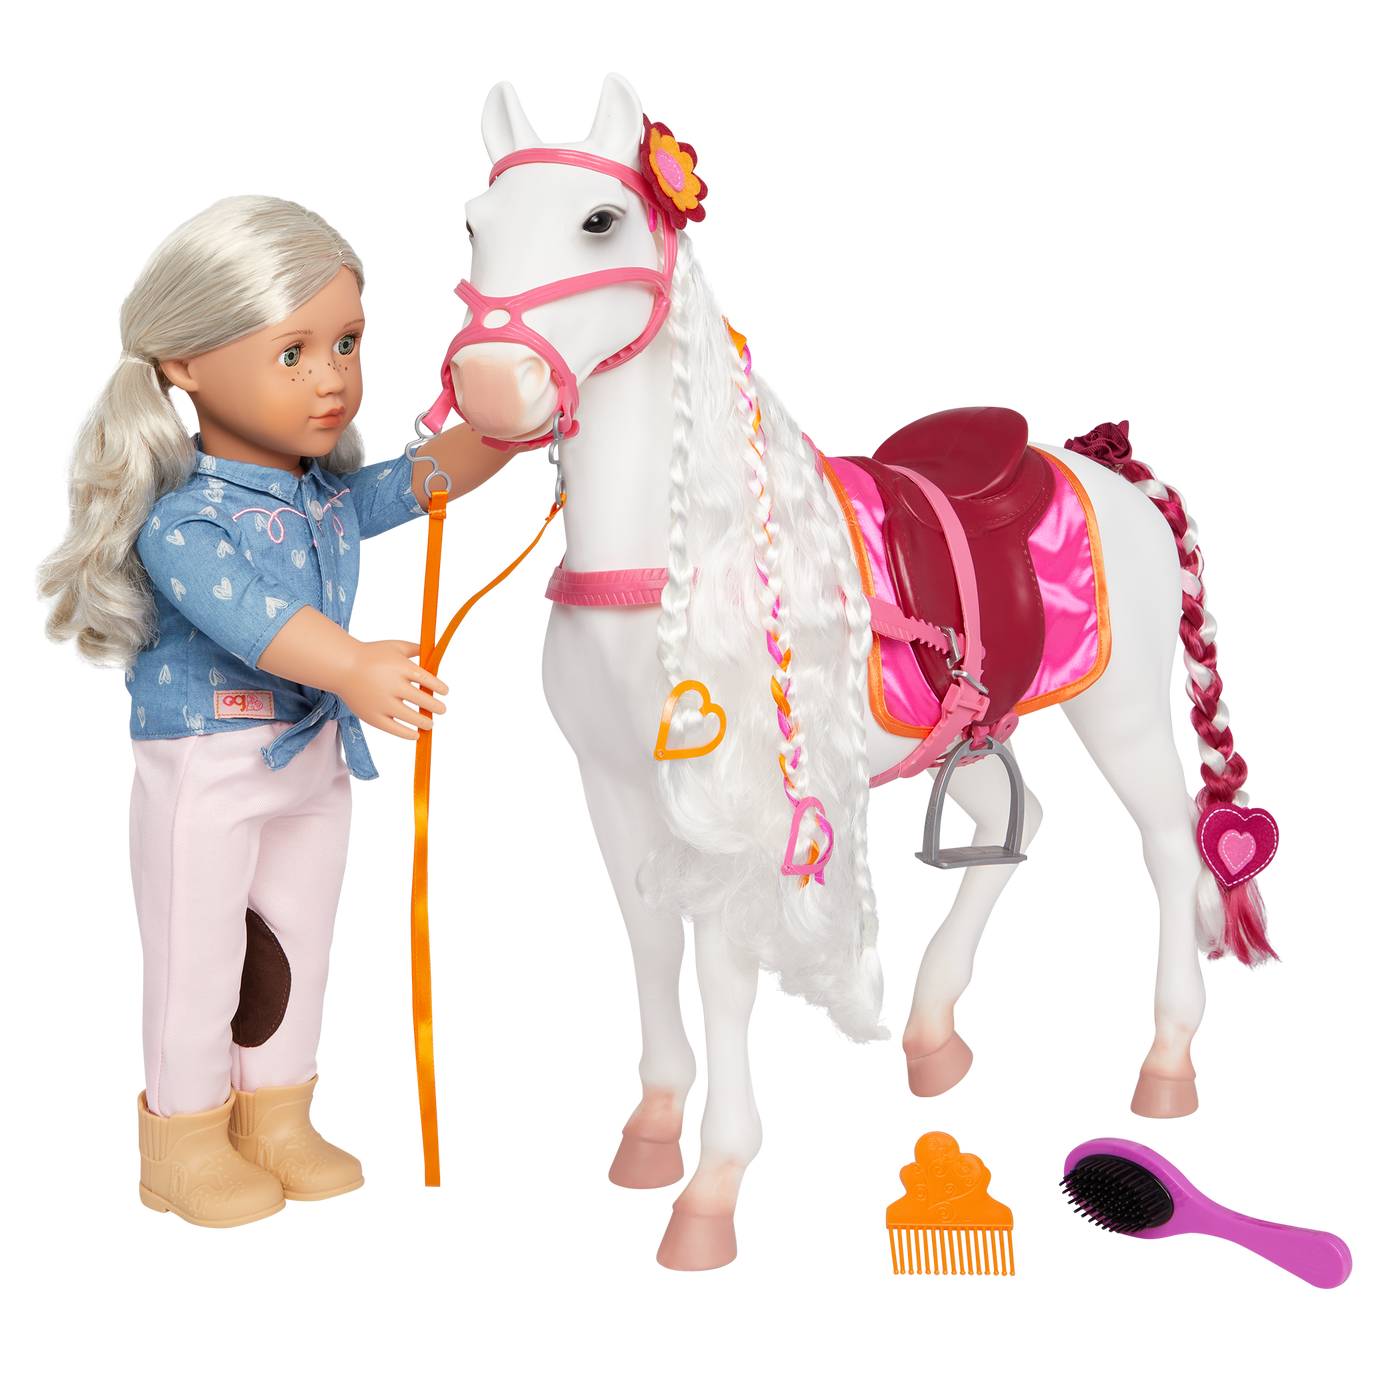 Camarillo horse figurine